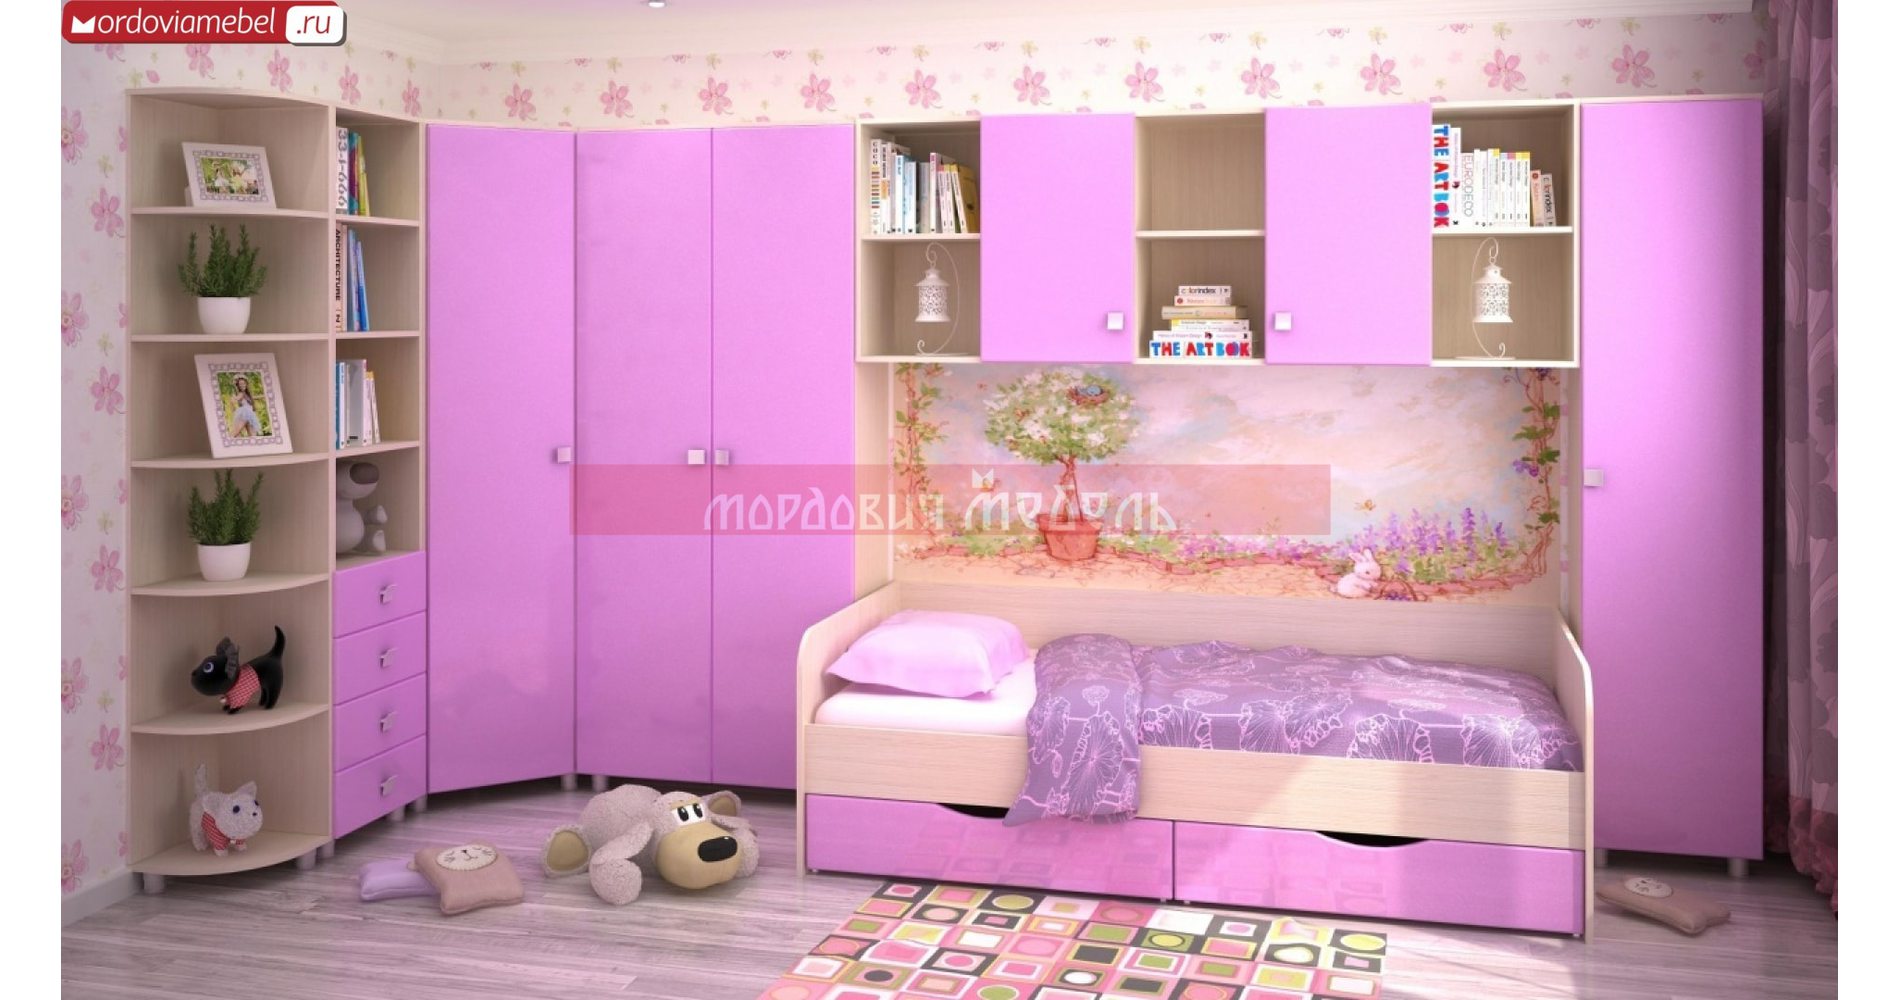 Детская мебель mosmirmebeli gmail com. Мебель для девочки в комнату. Детская спальня мебель.